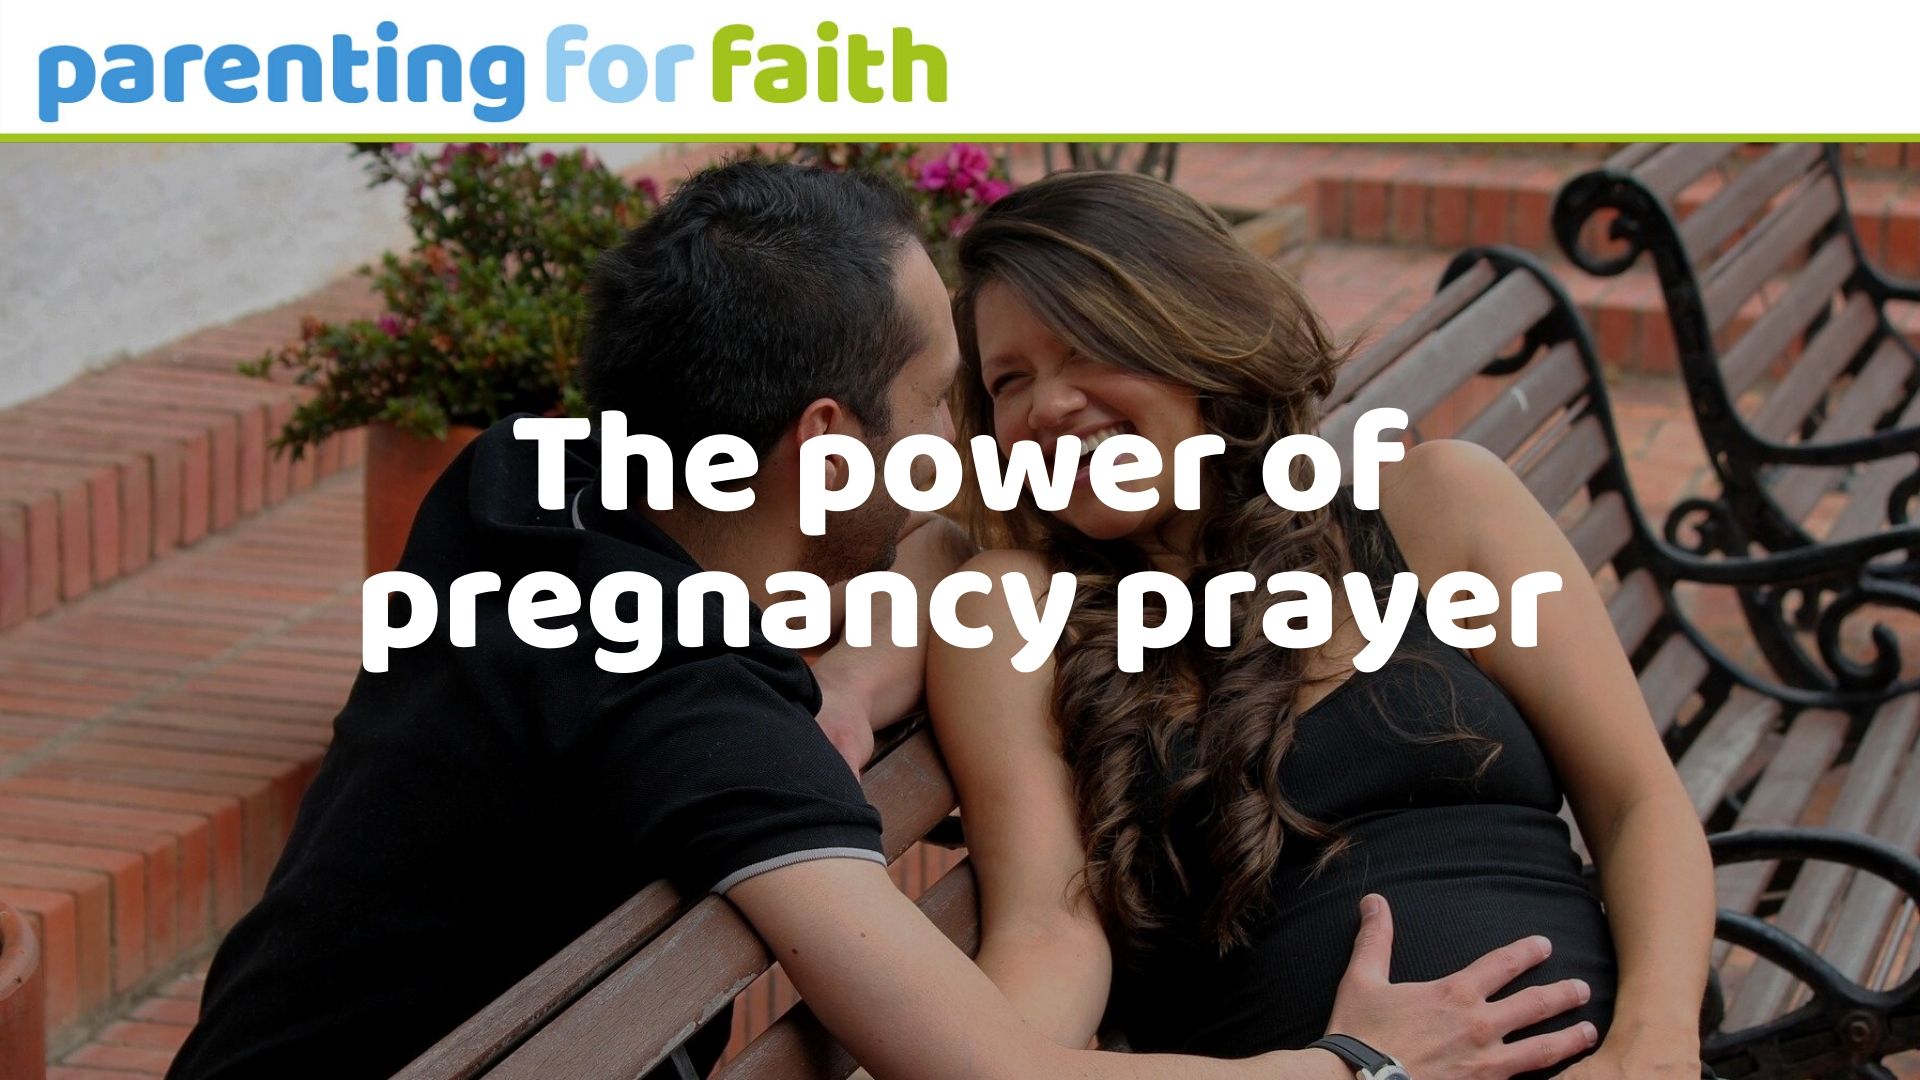 the power of pregnancy prayer OG image for PFF website 1920 x 1080px 1